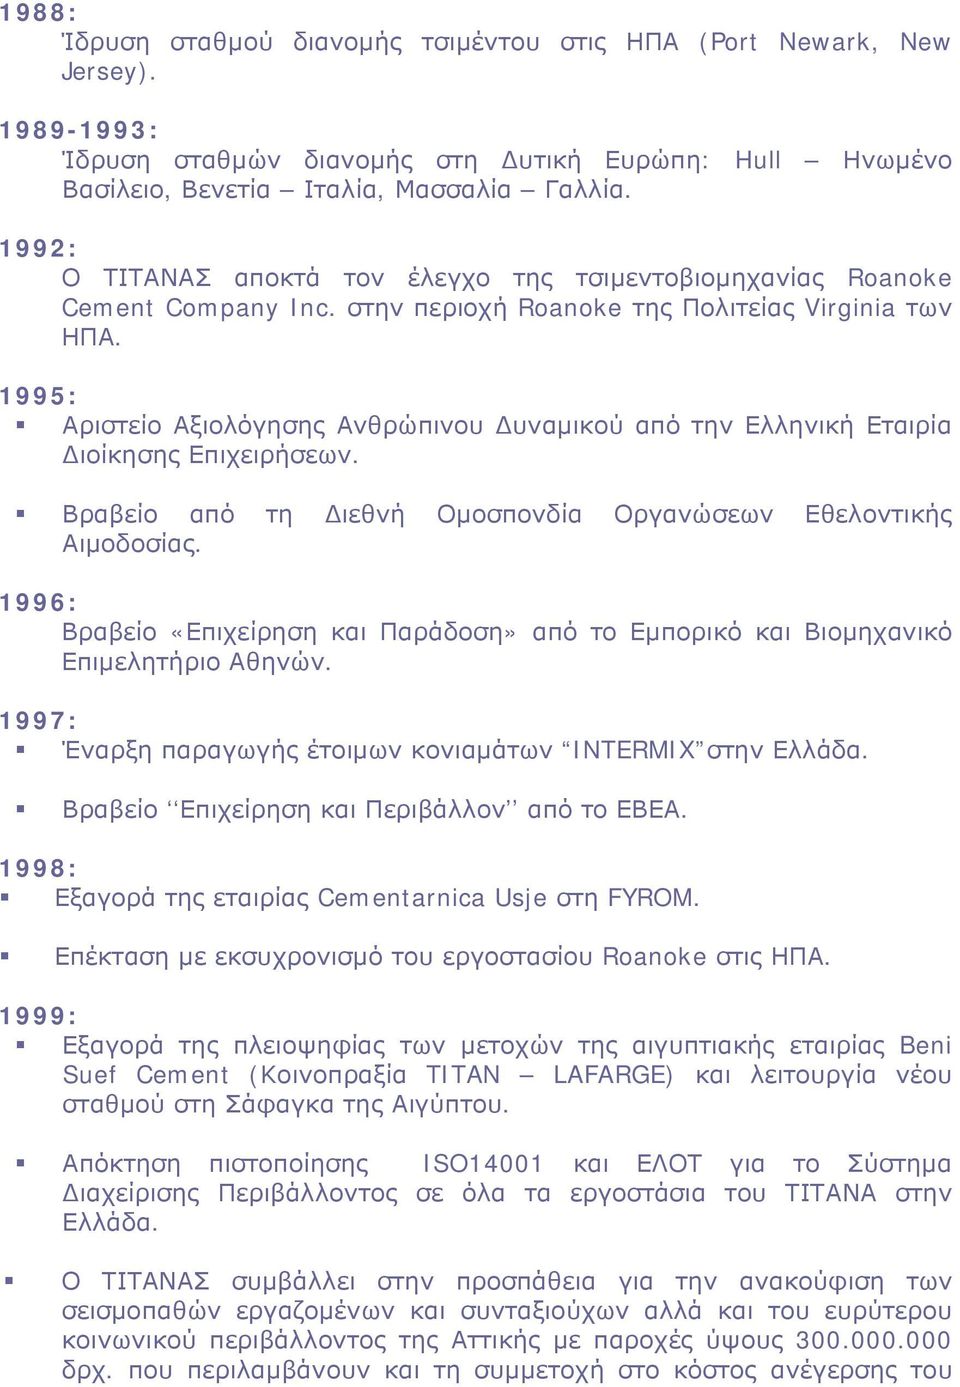 1995: Αριστείο Αξιολόγησης Ανθρώπινου υναμικού από την Ελληνική Εταιρία ιοίκησης Επιχειρήσεων. Βραβείο από τη ιεθνή Ομοσπονδία Οργανώσεων Εθελοντικής Αιμοδοσίας.